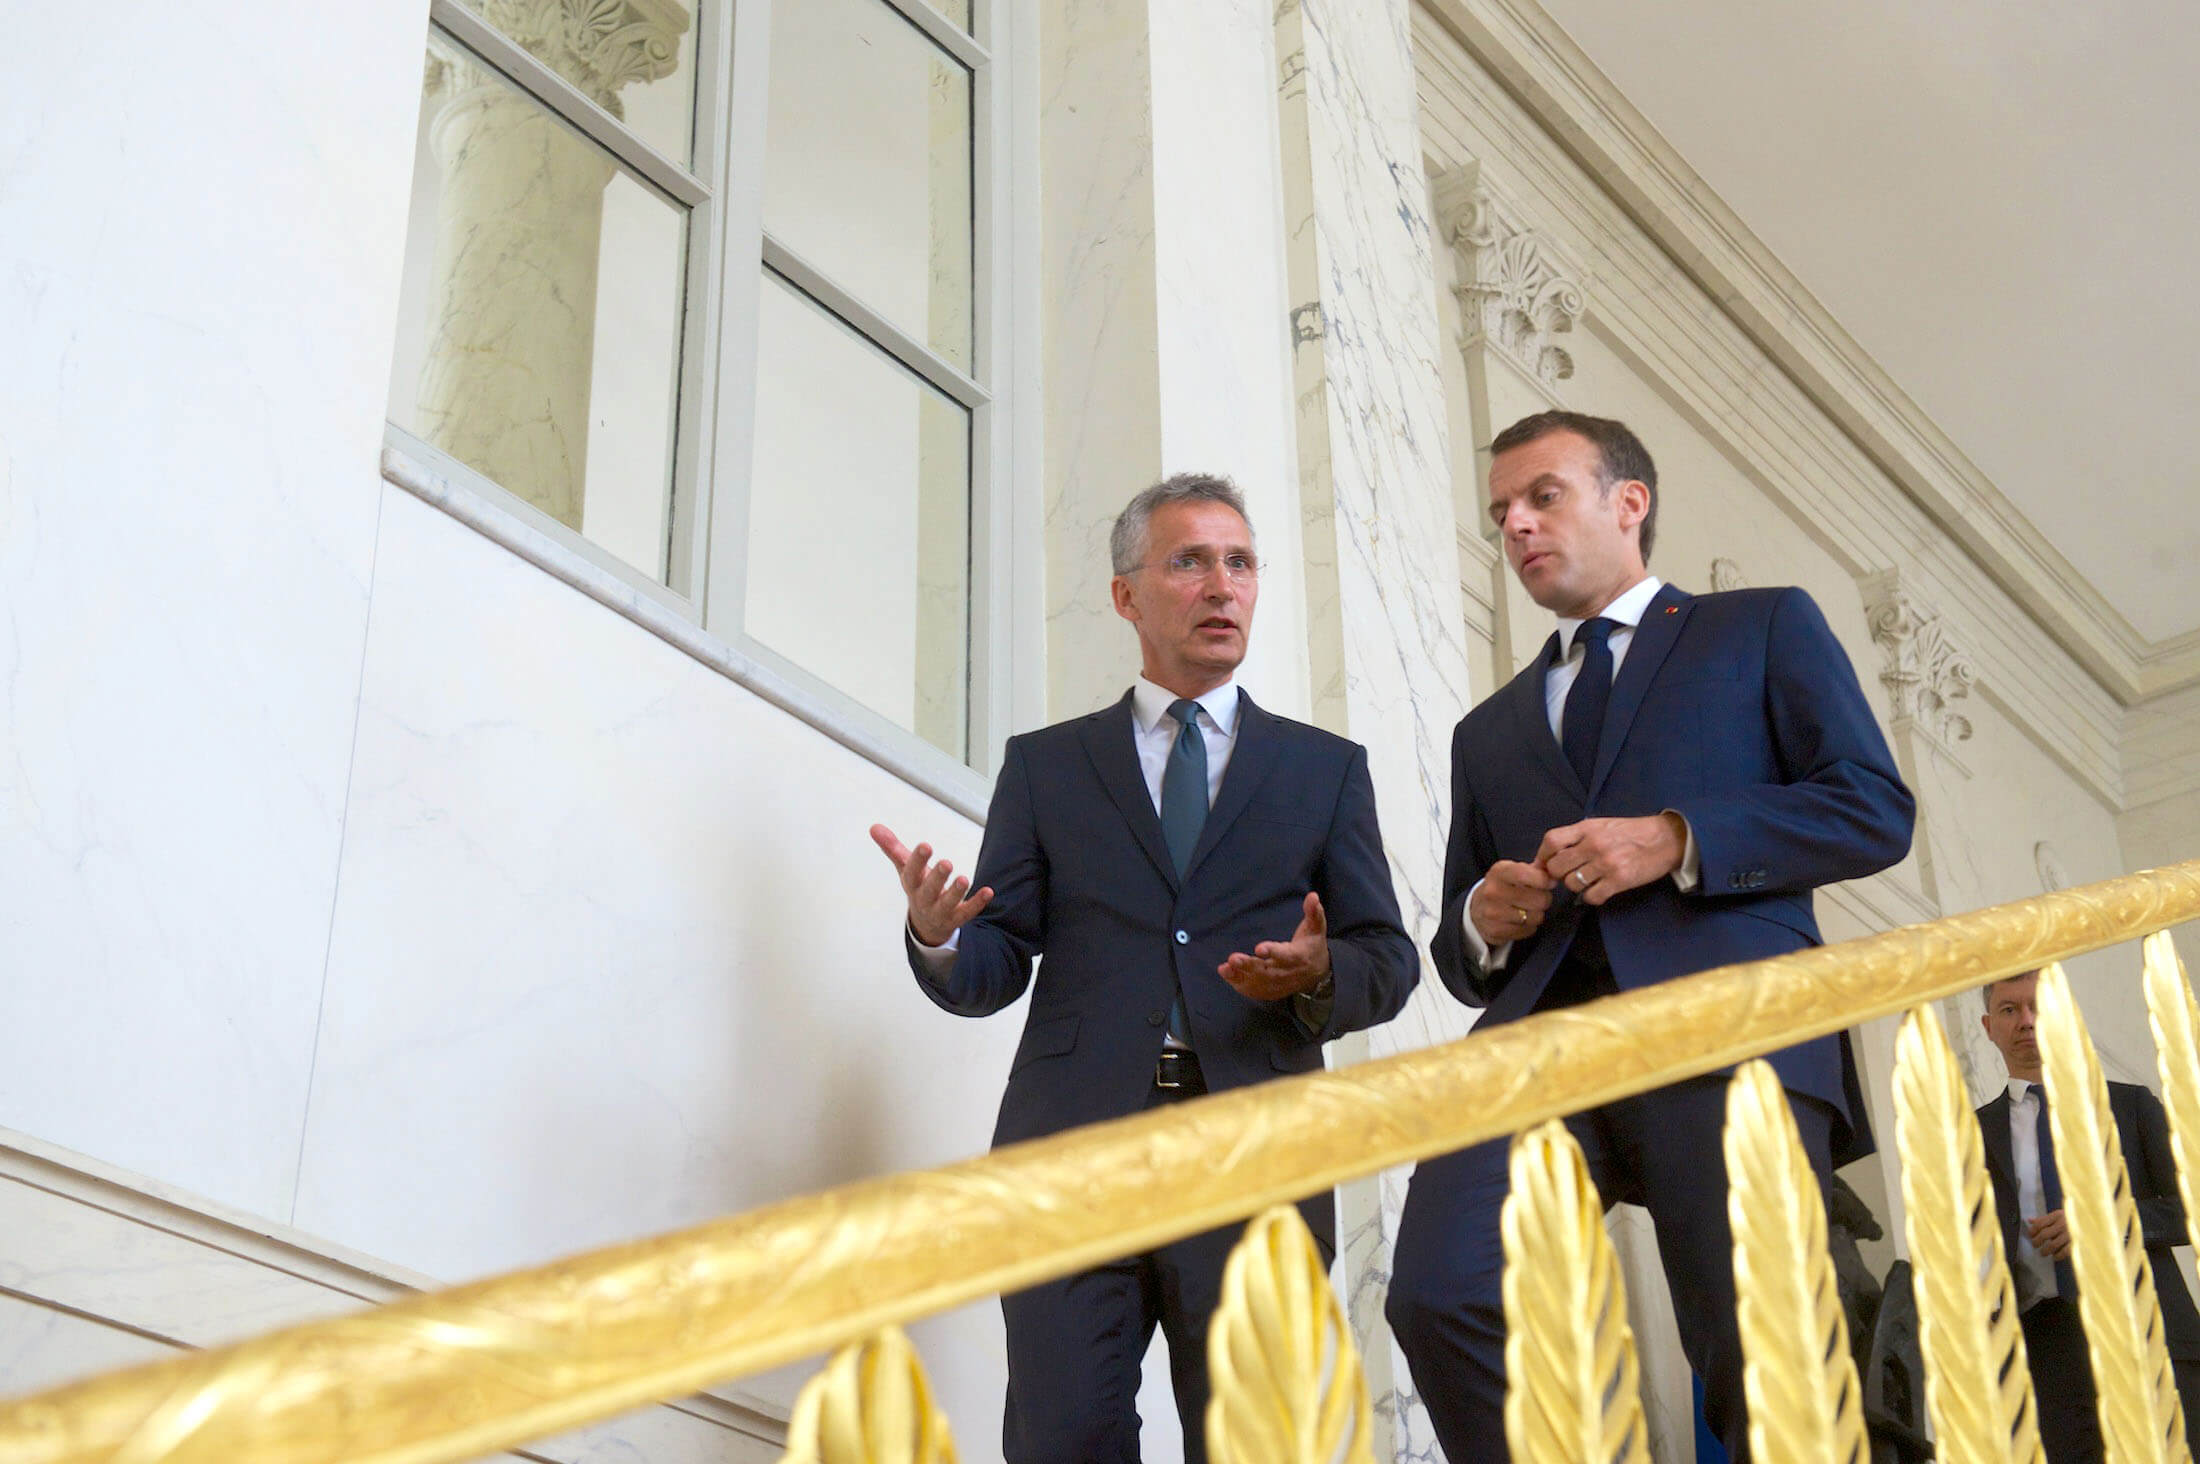 Zandee- De Franse president Emmanuel Macron met de secretaris-generaal van de NAVO Jens Stoltenberg in 2018. NATO